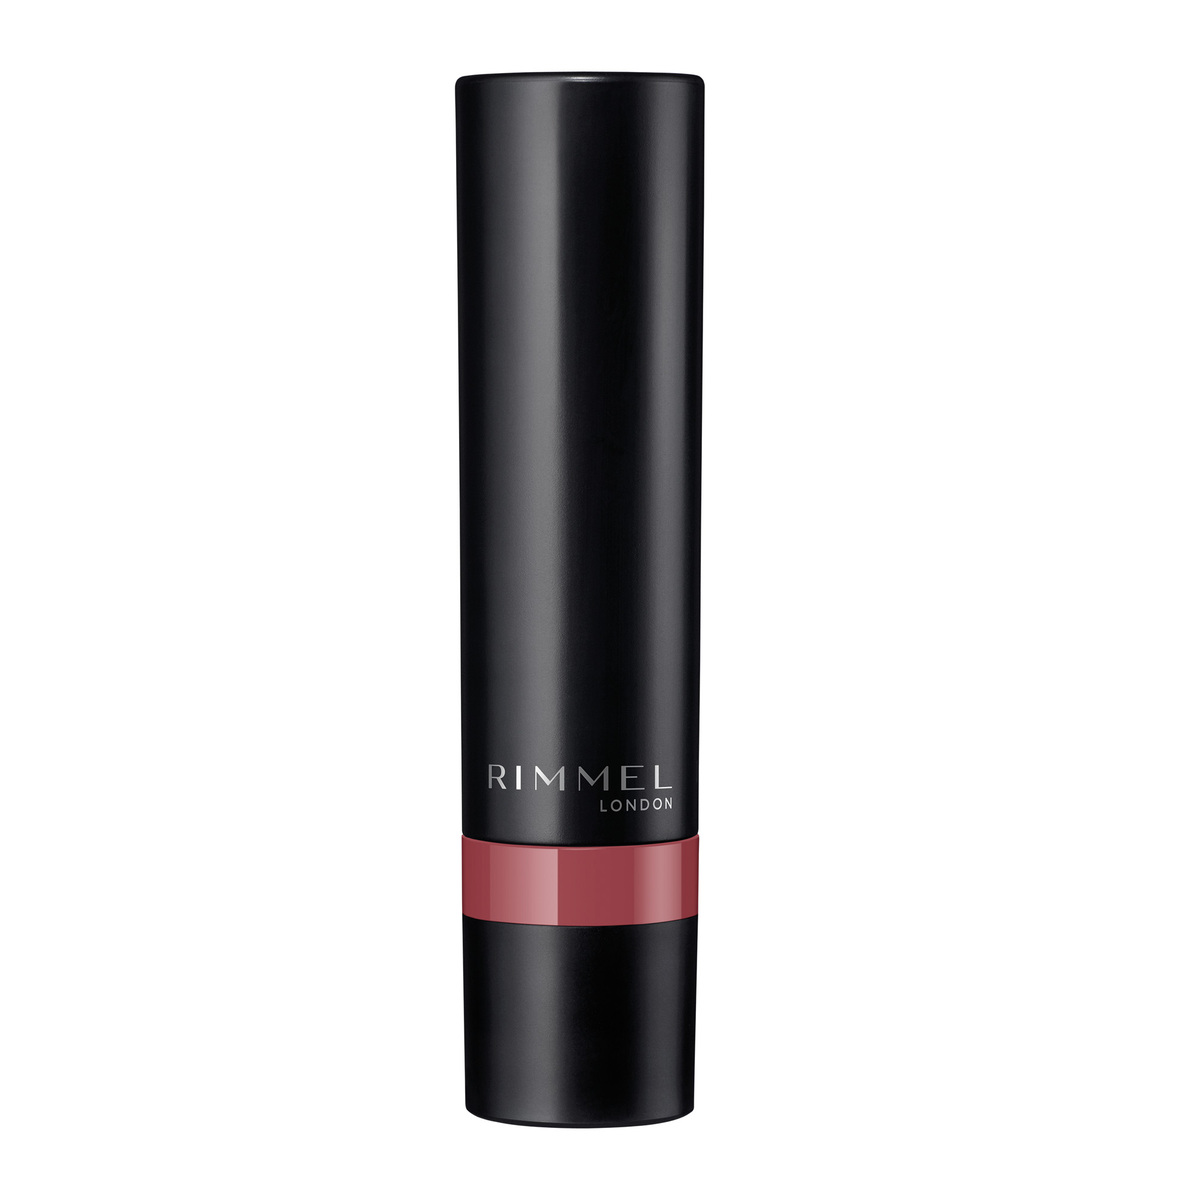 Rimmel London Lasting Finish Matte Lipstick, 220 Mauve, 1.2 g